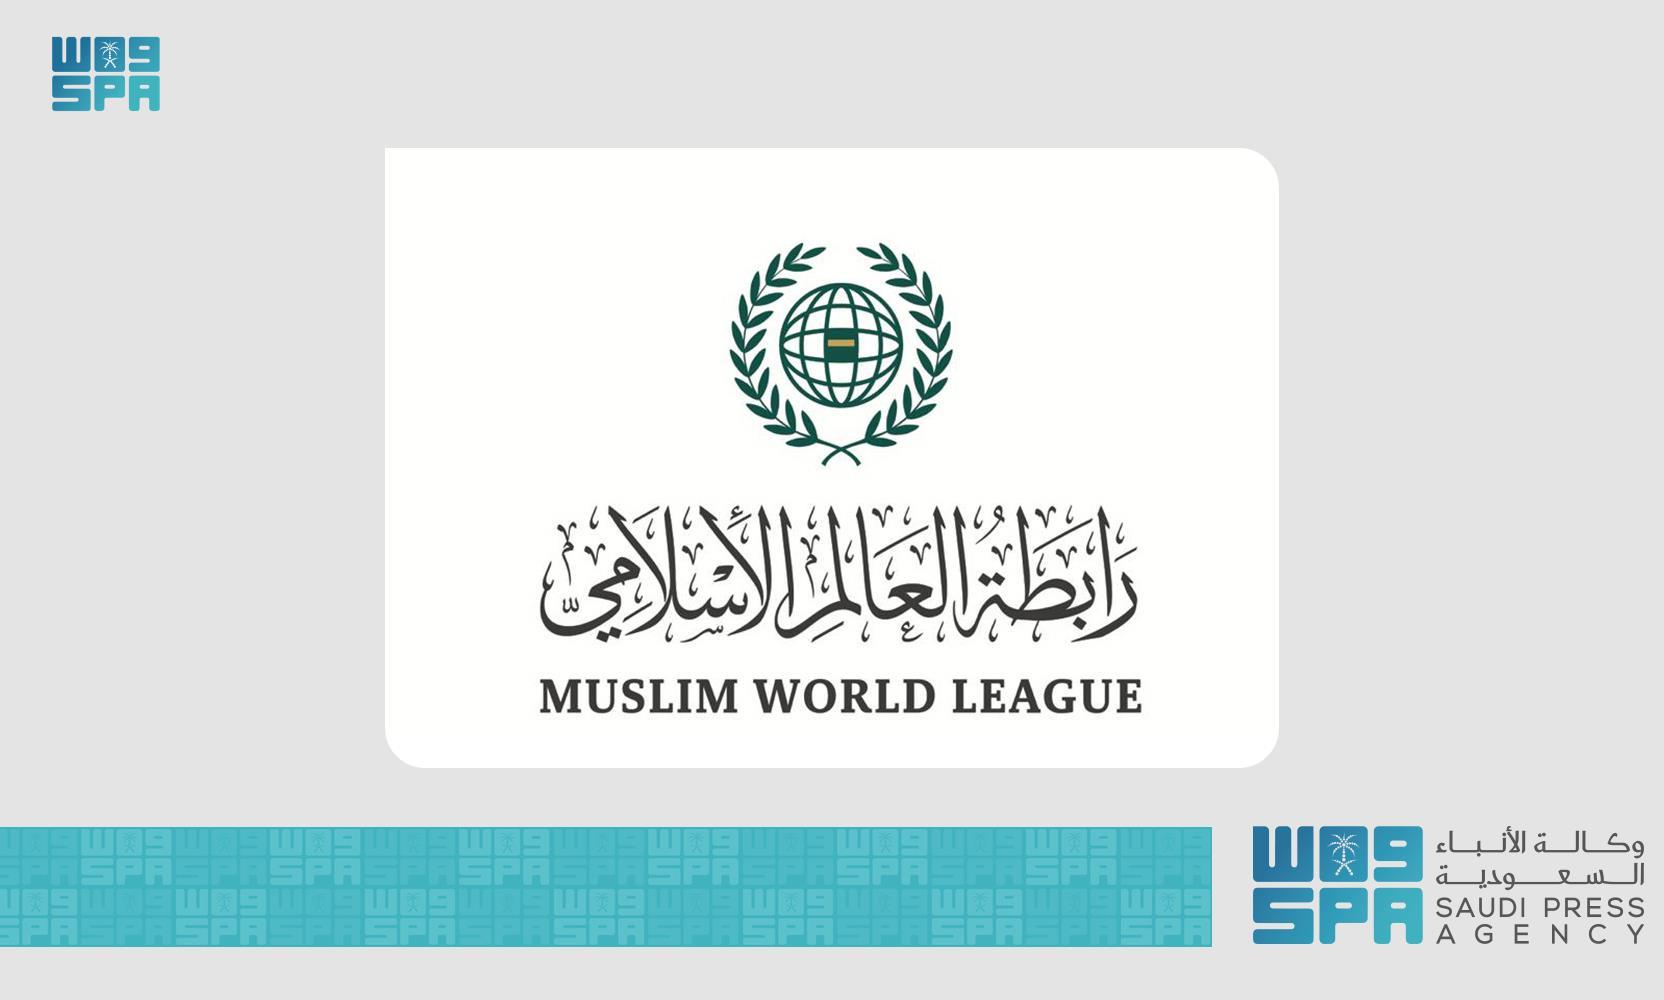 سياسي / رابطة العالم الإسلامي تدين إجراءات إخلاء منازل فلسطينية بالقدس وفرض السيادة عليها بالقوة